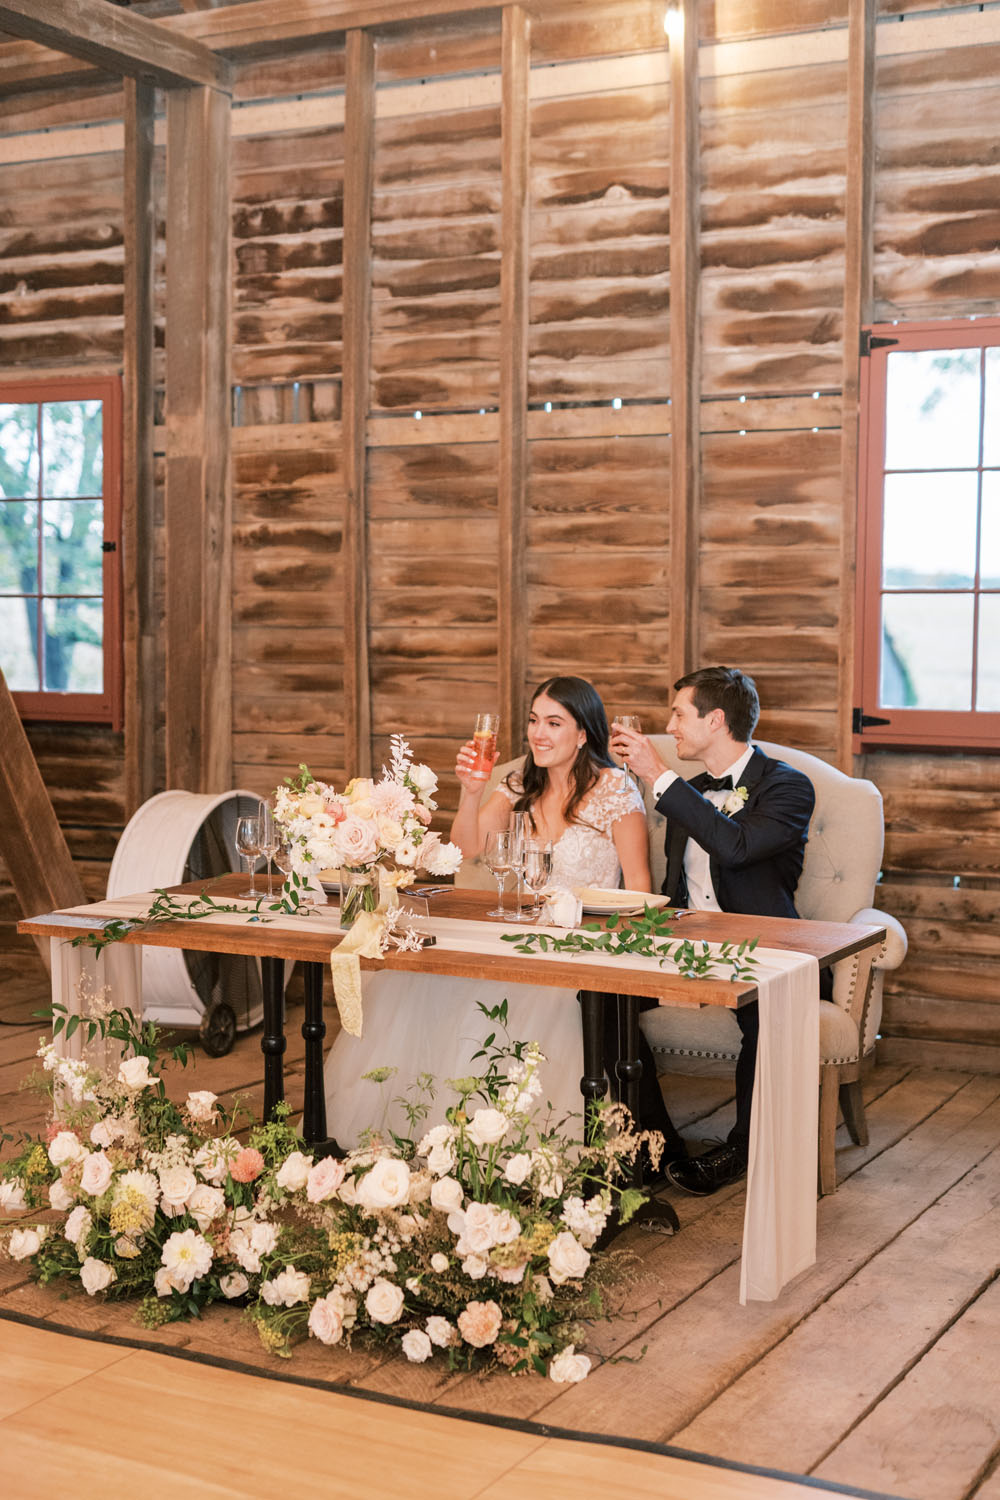 sweetheart table at rustic barn wedding in Virginia